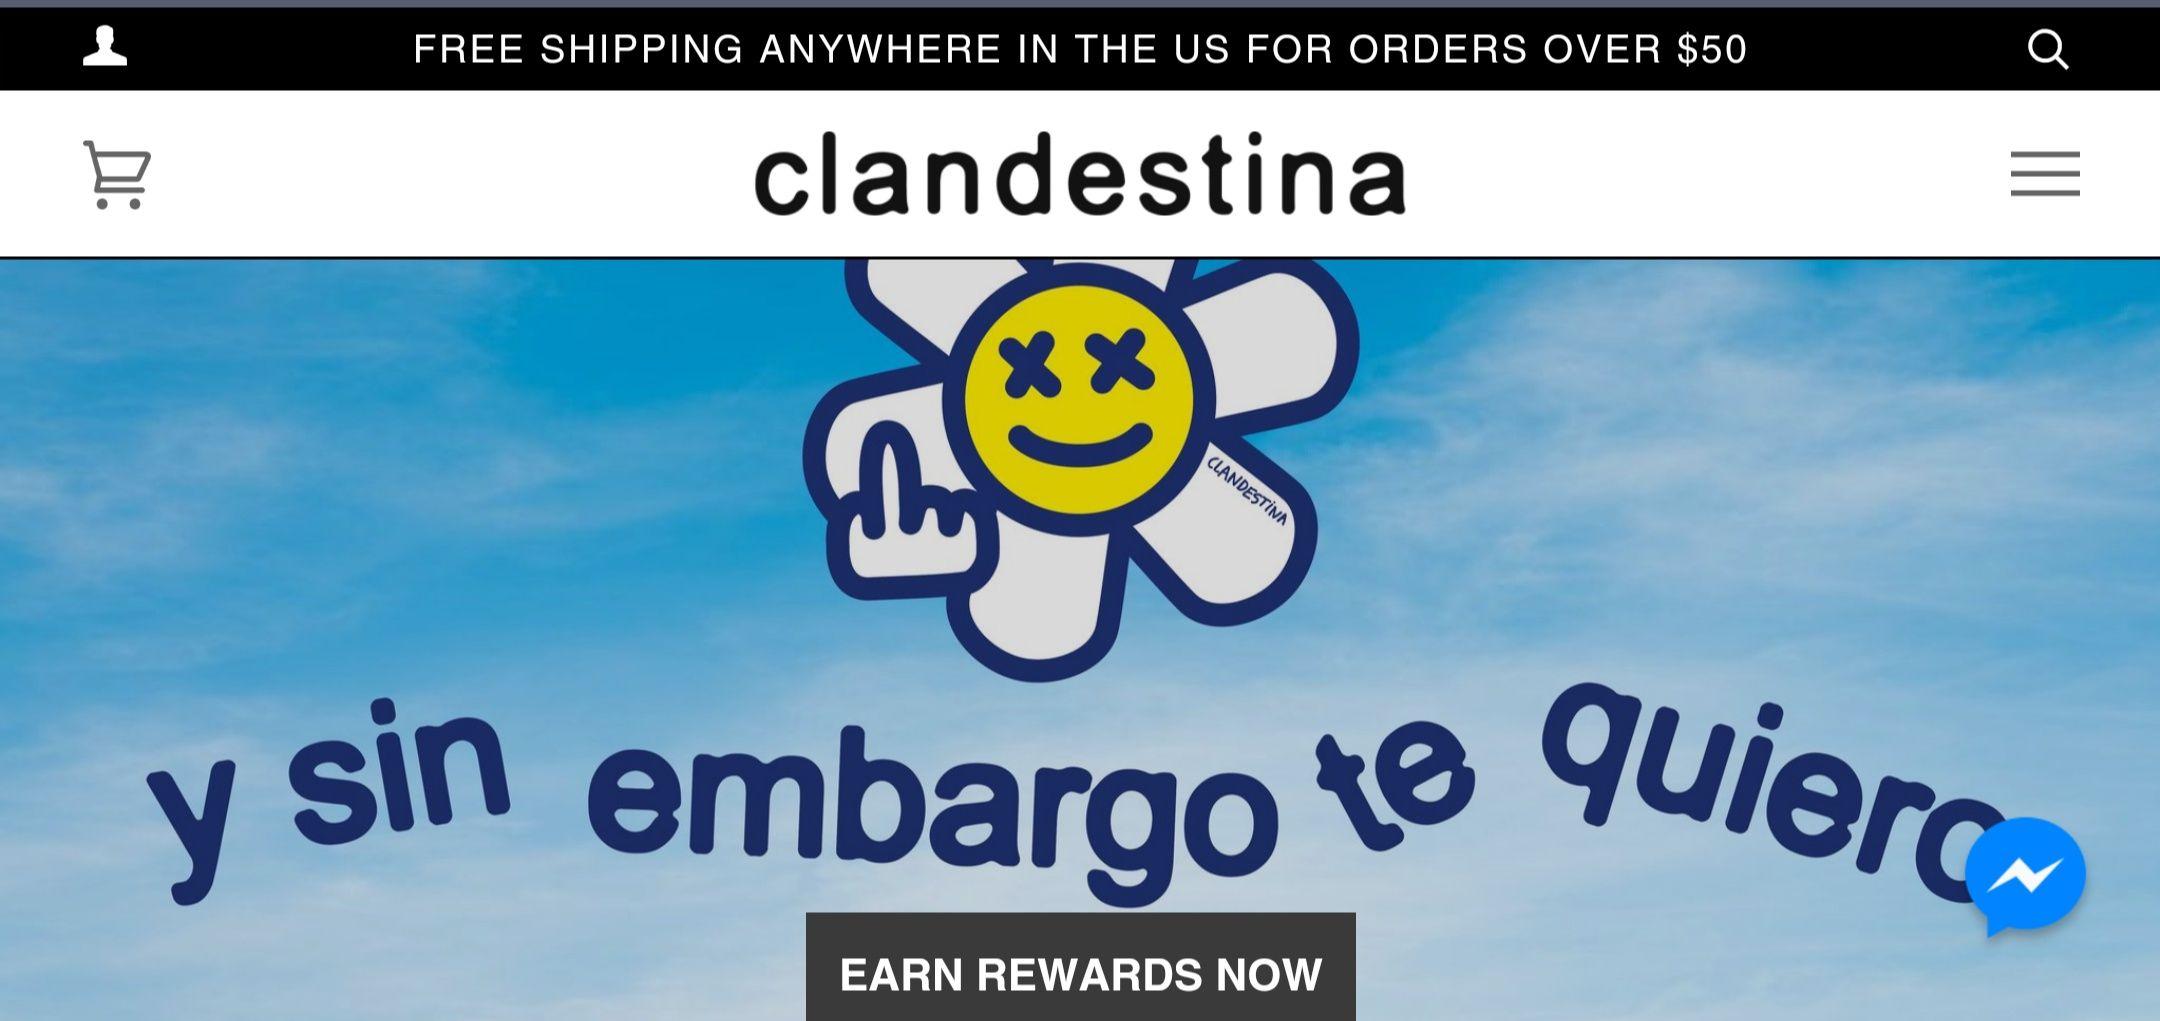 Captura de pantalla de la portada de la tienda online de Clandestina